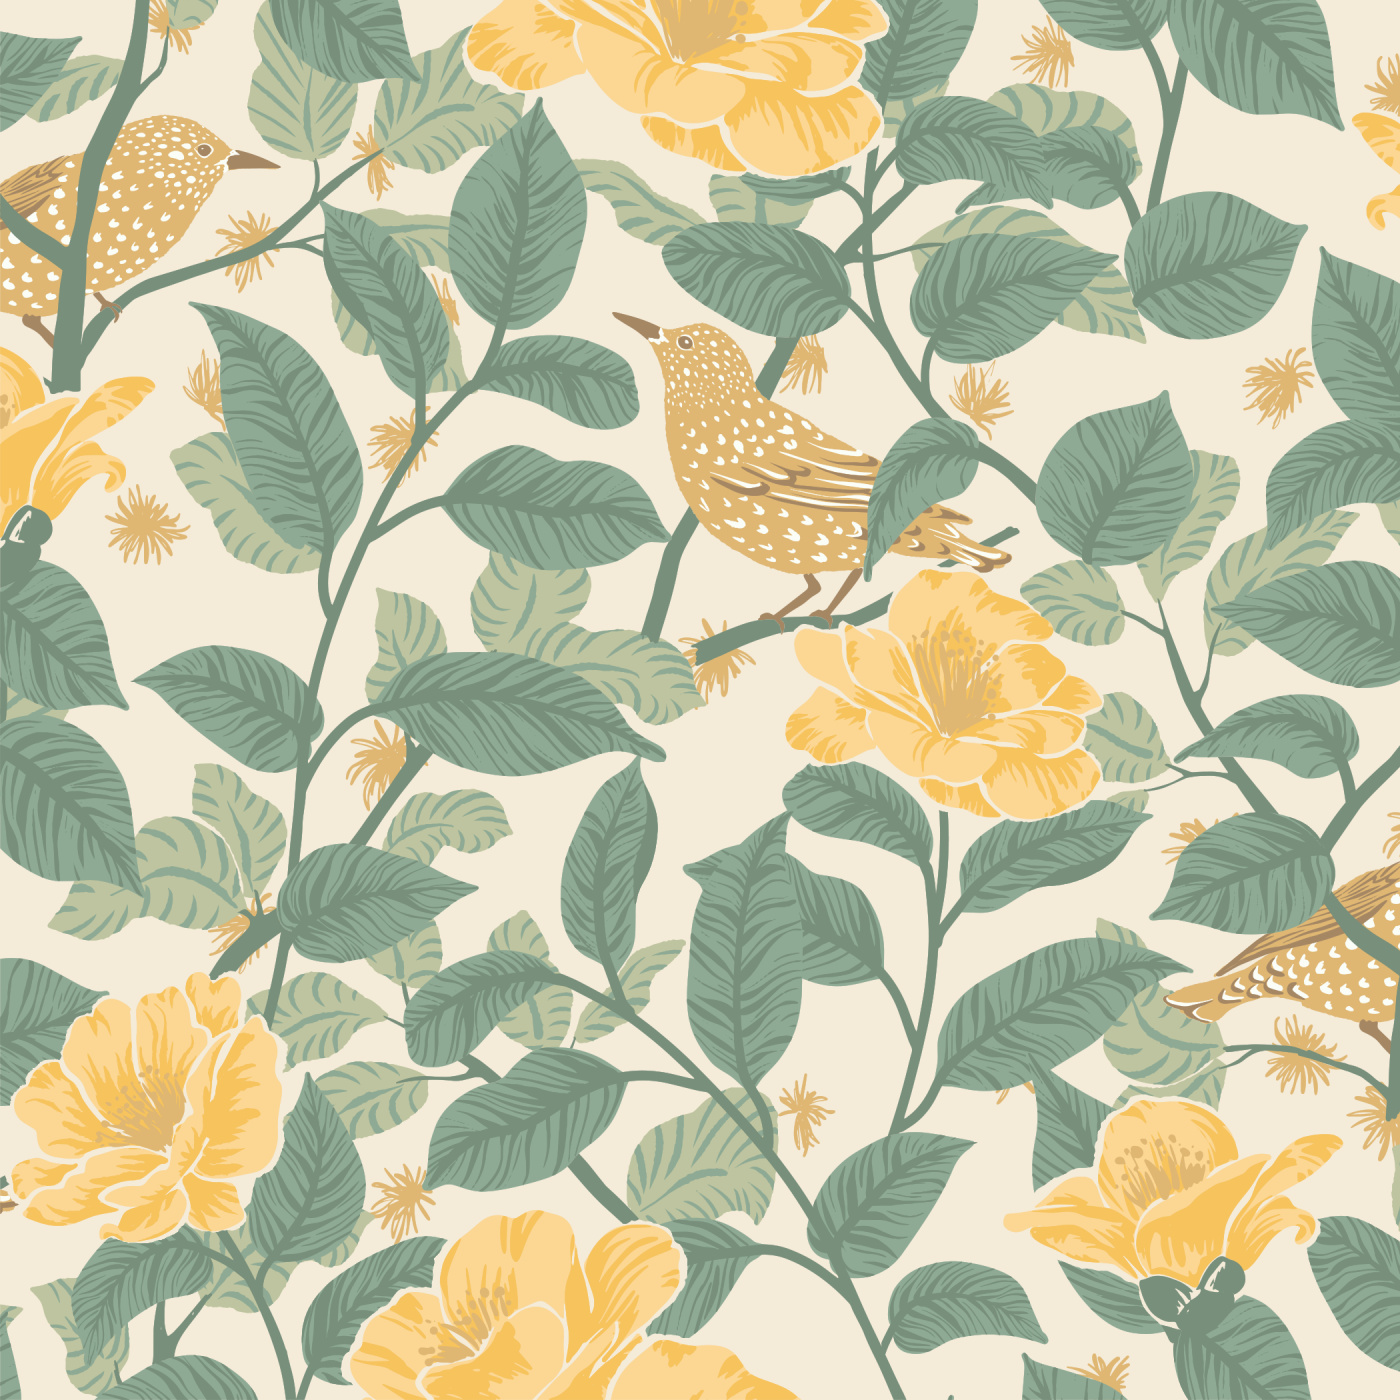 Starlings & Camellias Wallpaper